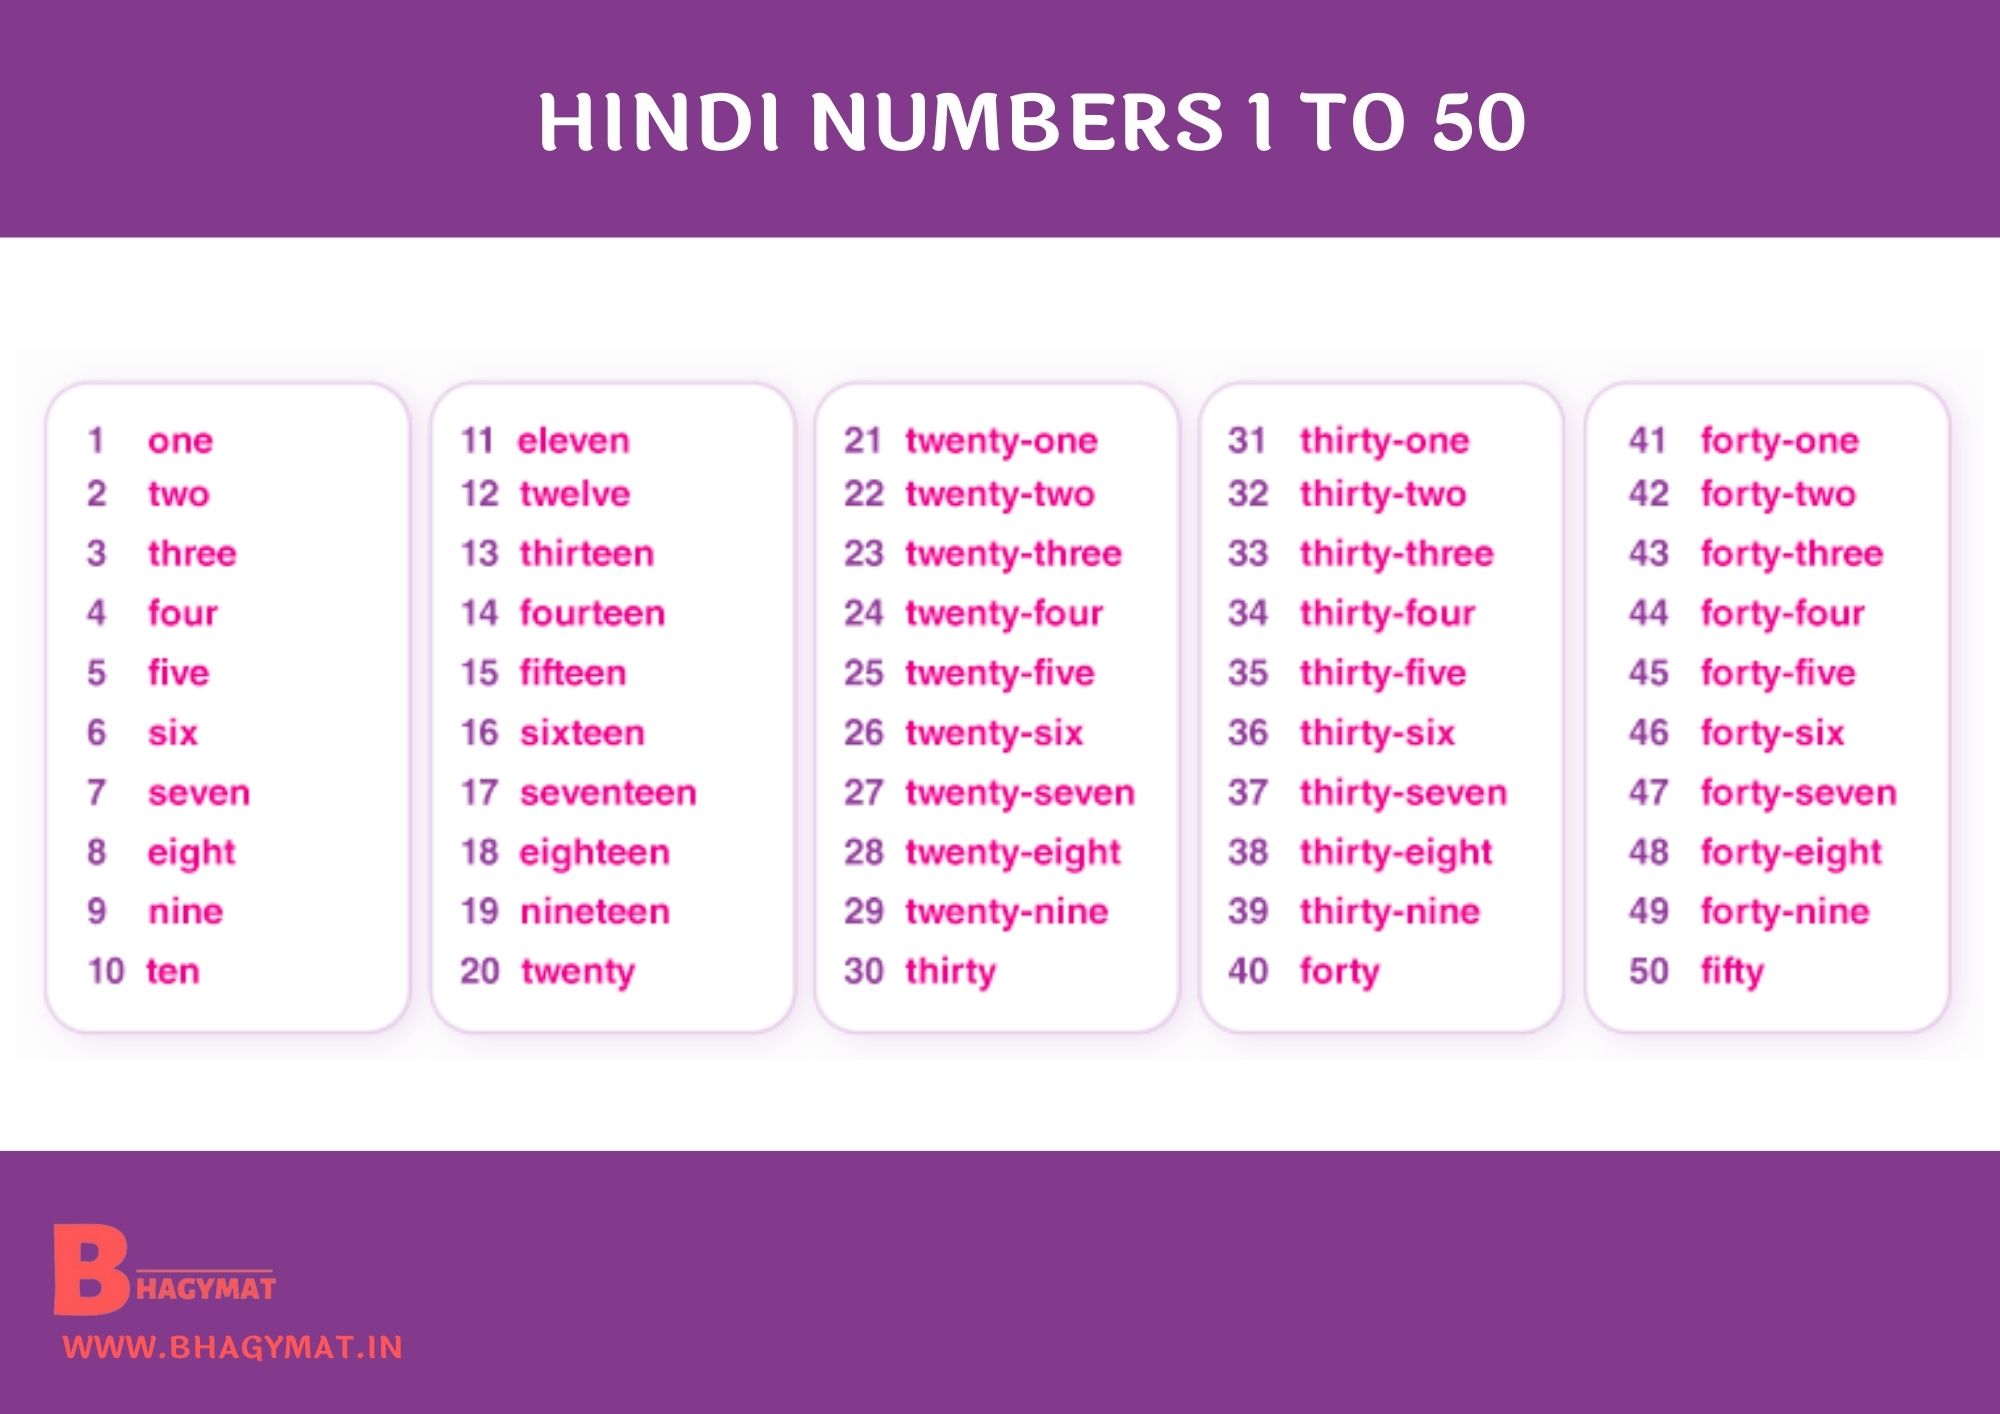 Hindi Numbers 1 To 50 | 1 To 50 Numbers In Hindi | Hindi Numbers 1-50 | Numbers Hindi 1 To 50 | 1 To 50 Hindi Numbers